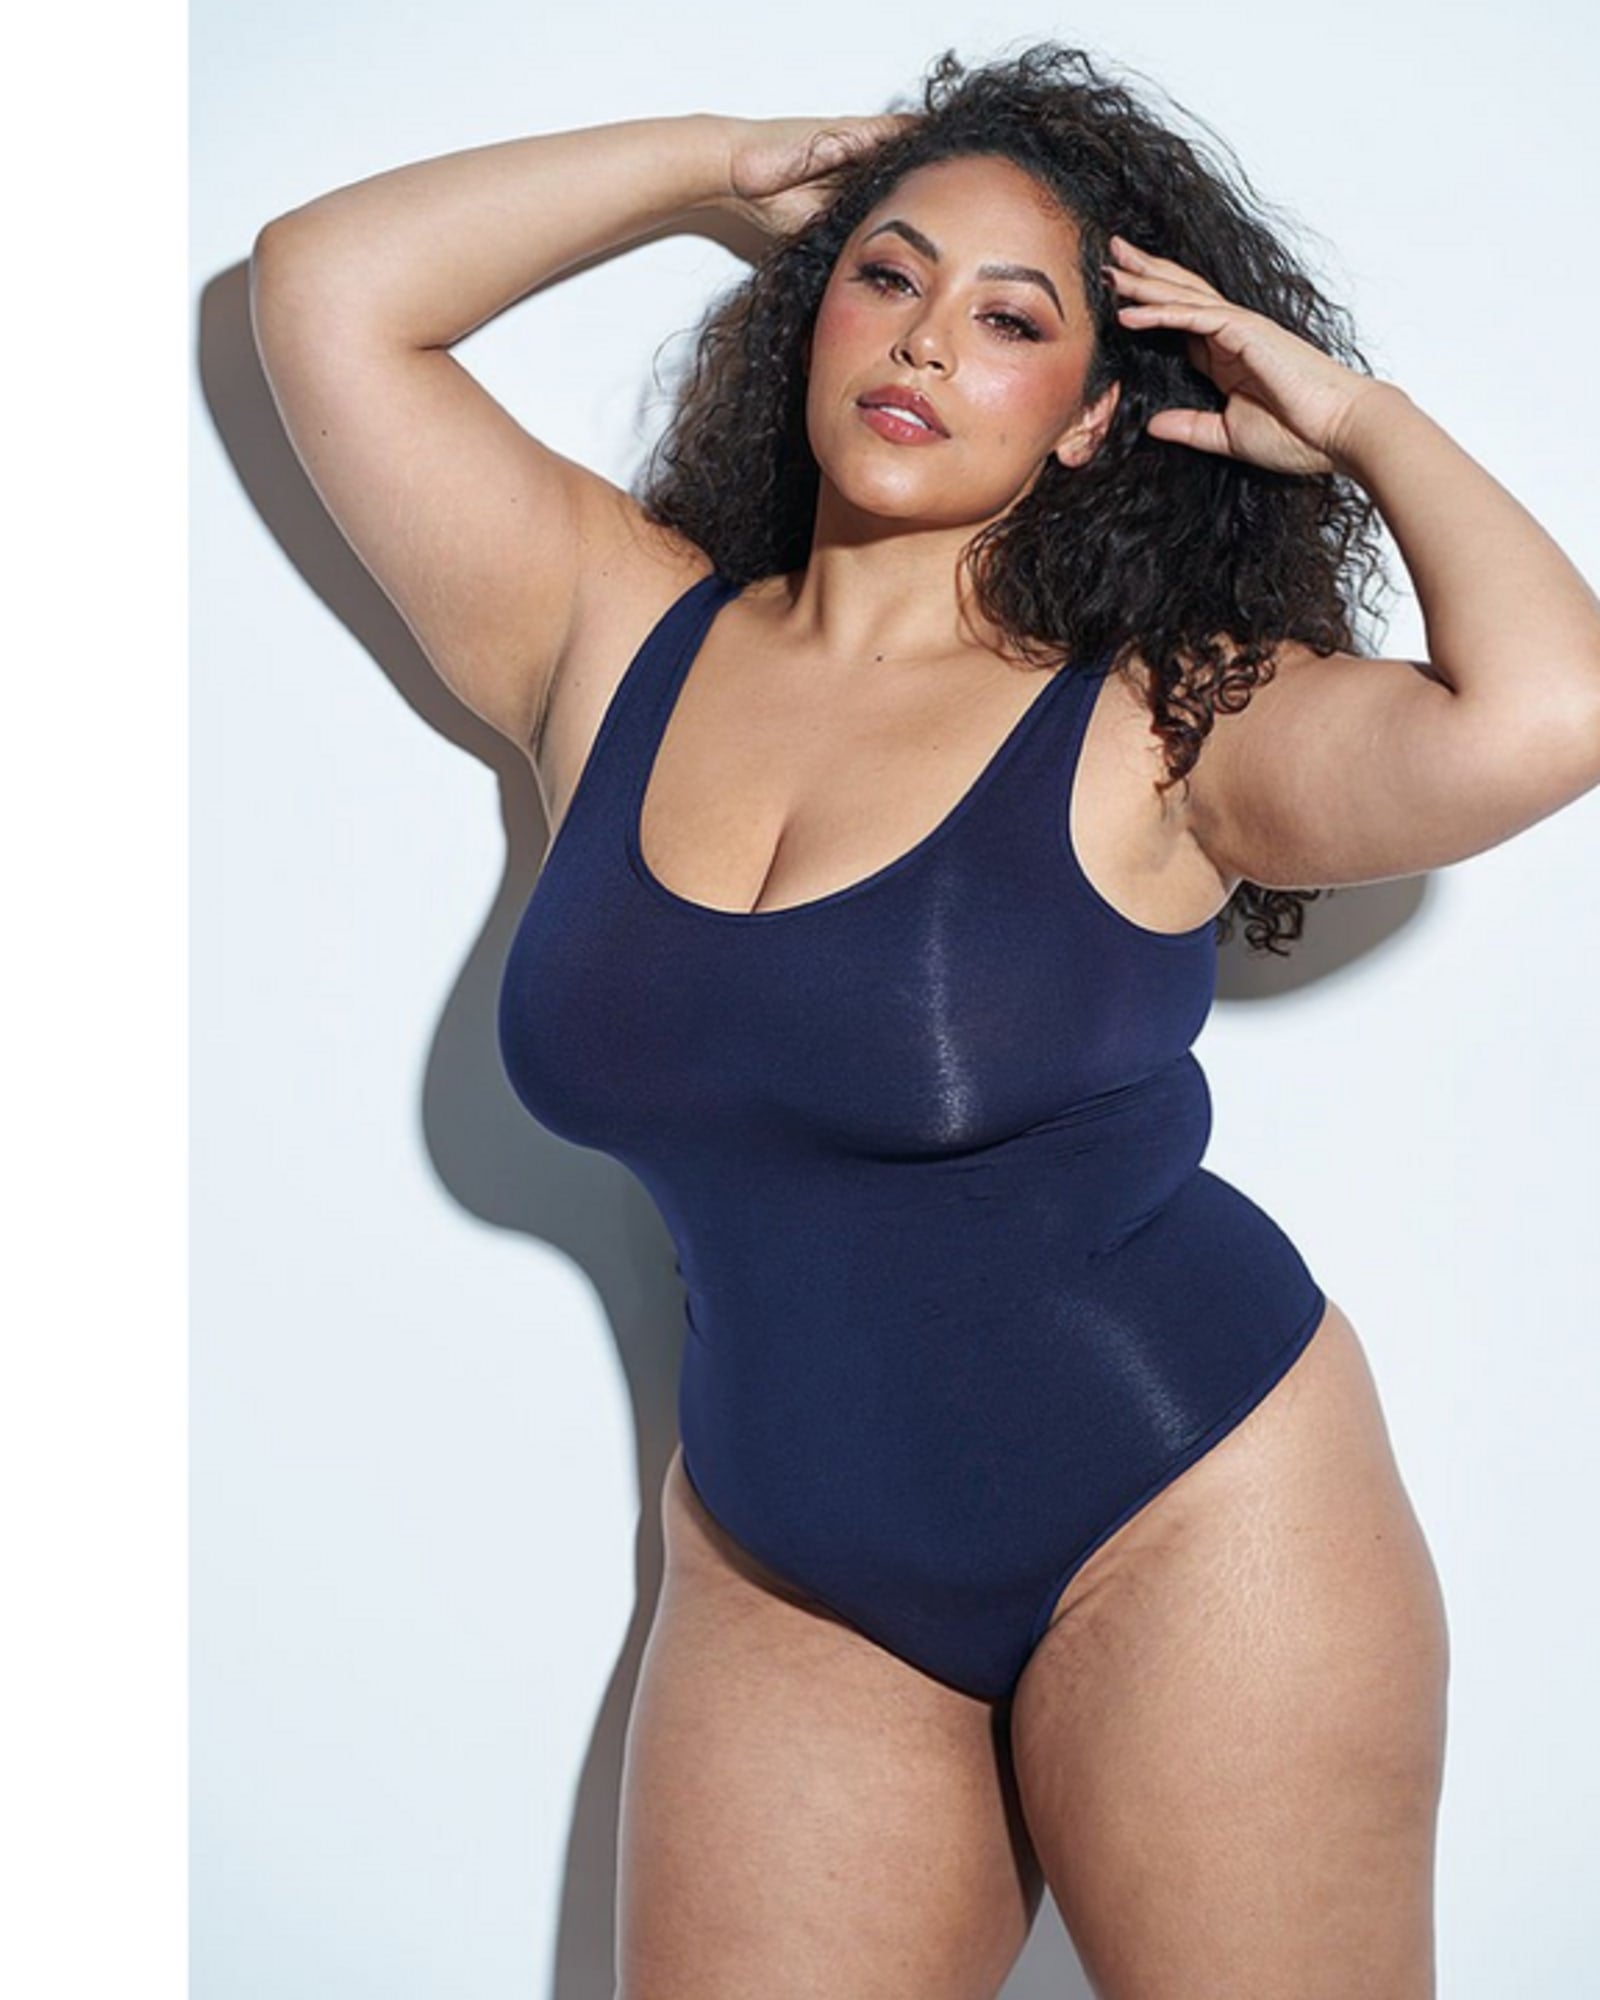 Buy Sexy Lingerie Women's BodySuit Plus Size Lingerie at